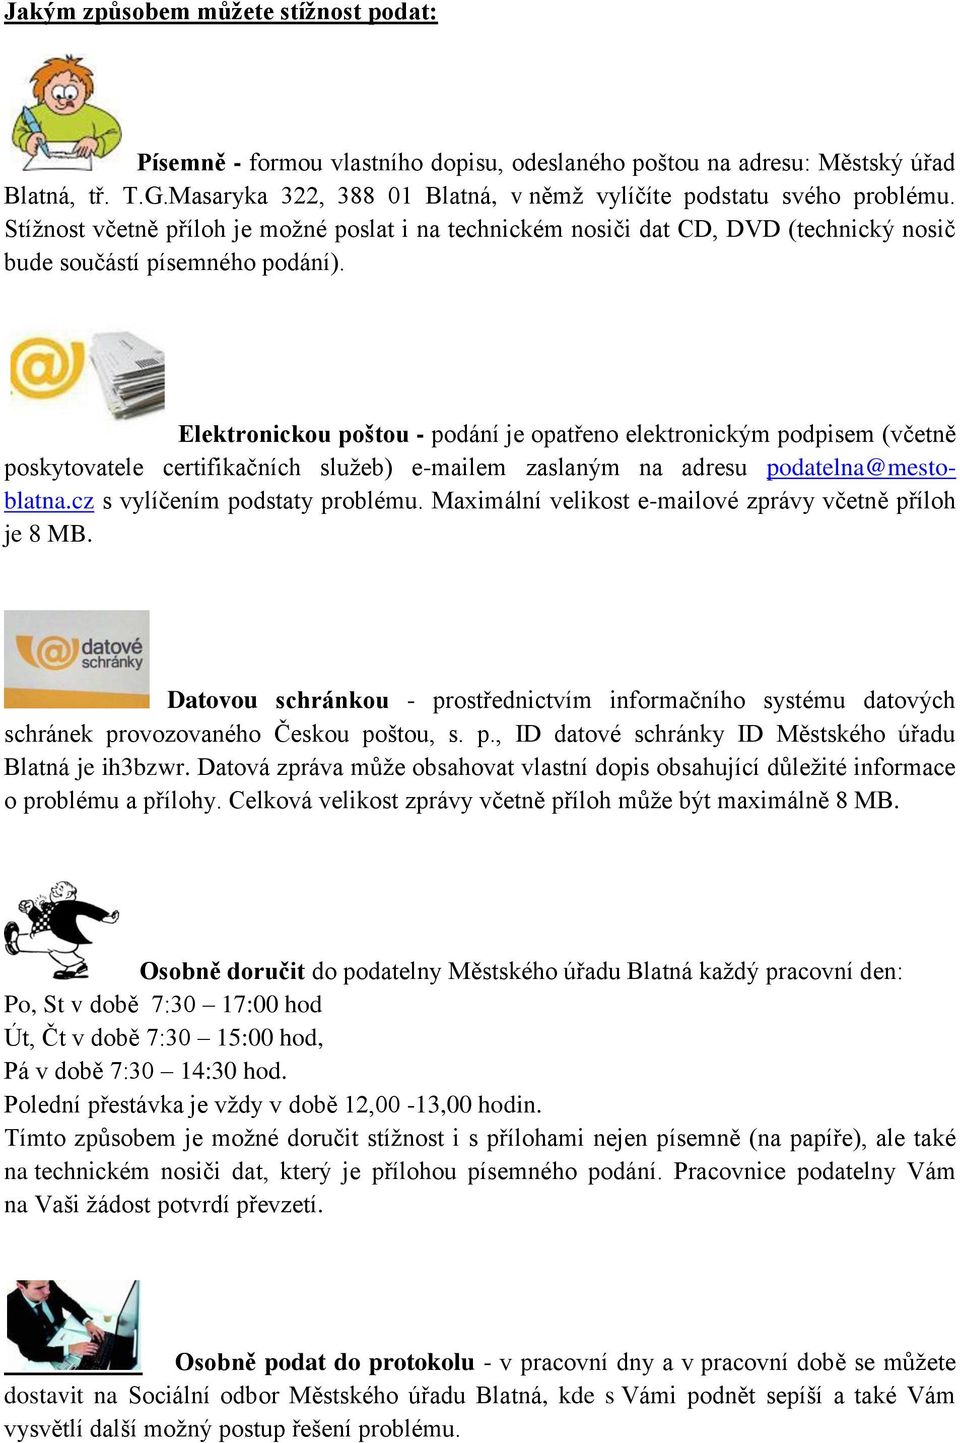 Elektronickou poštou - podání je opatřeno elektronickým podpisem (včetně poskytovatele certifikačních služeb) e-mailem zaslaným na adresu podatelna@mestoblatna.cz s vylíčením podstaty problému.